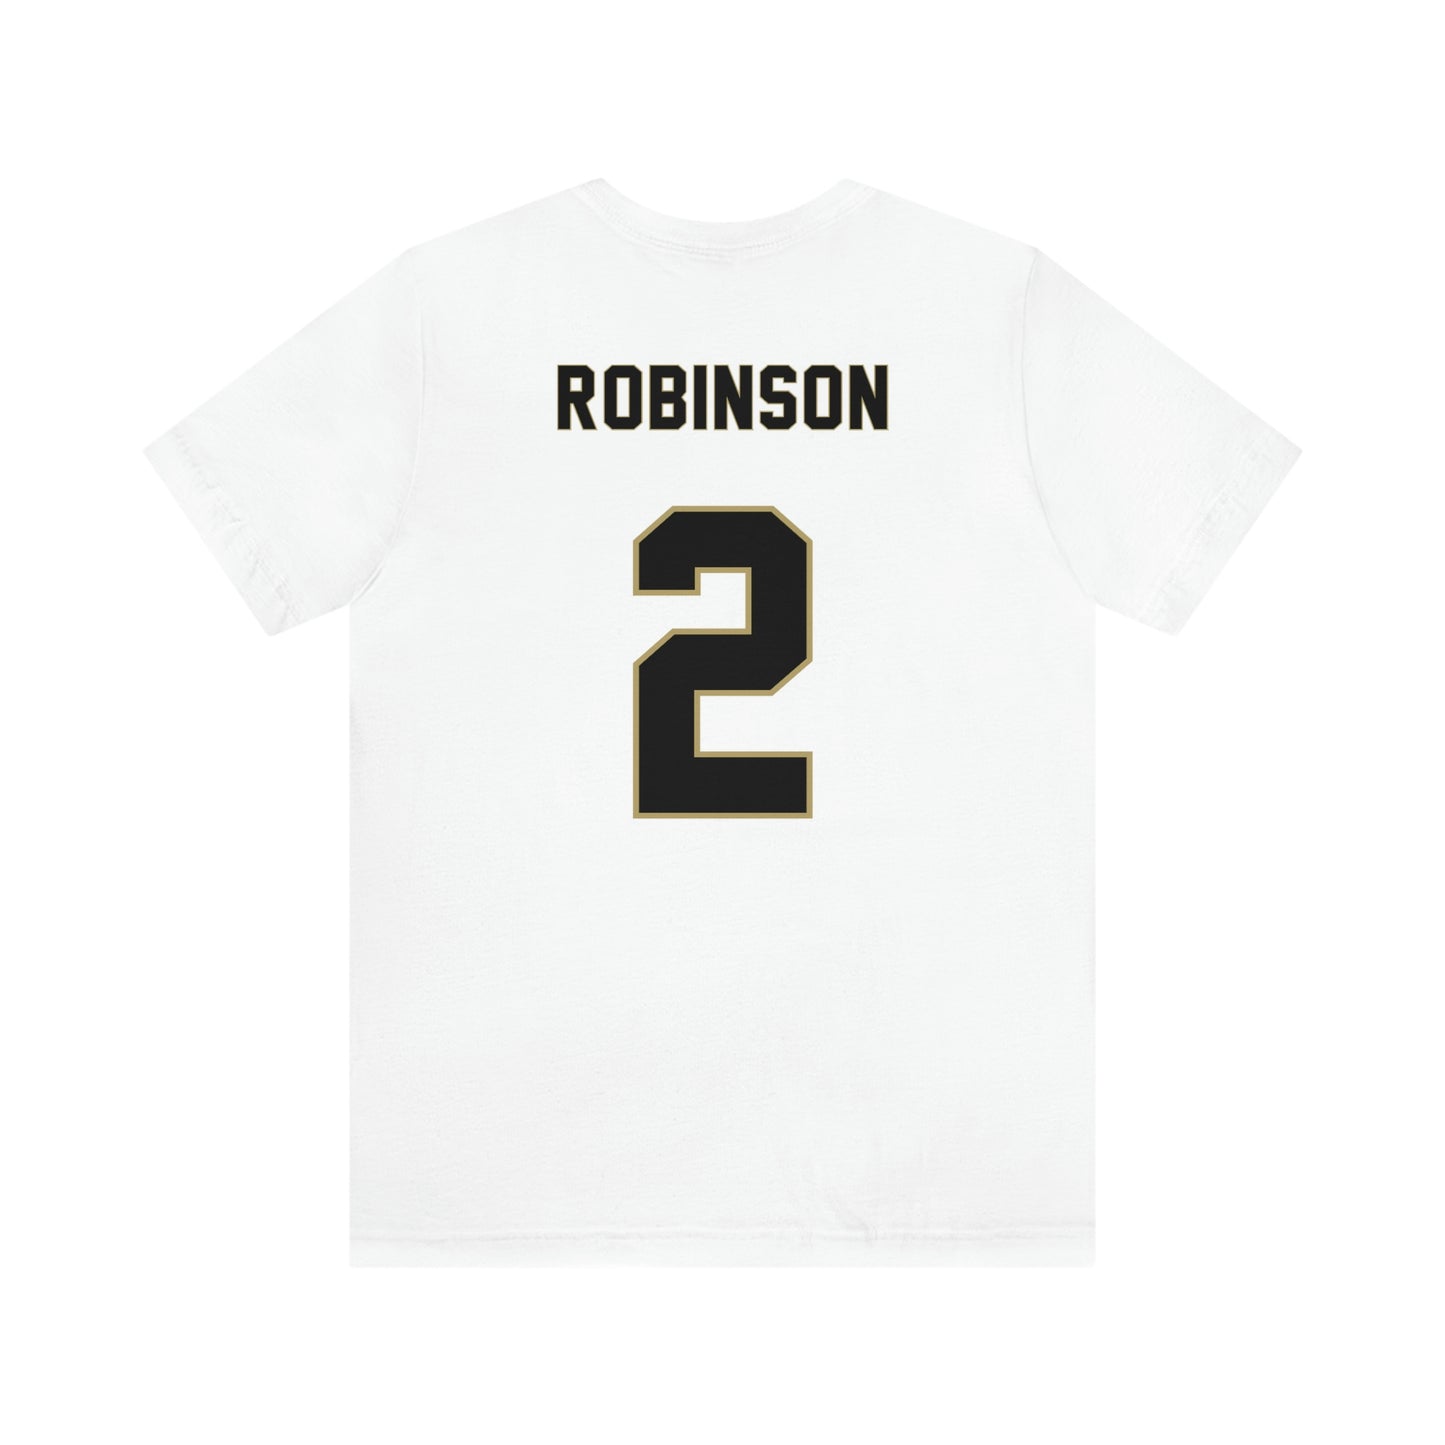 Corey Robinson Unisex Jersey Shirt